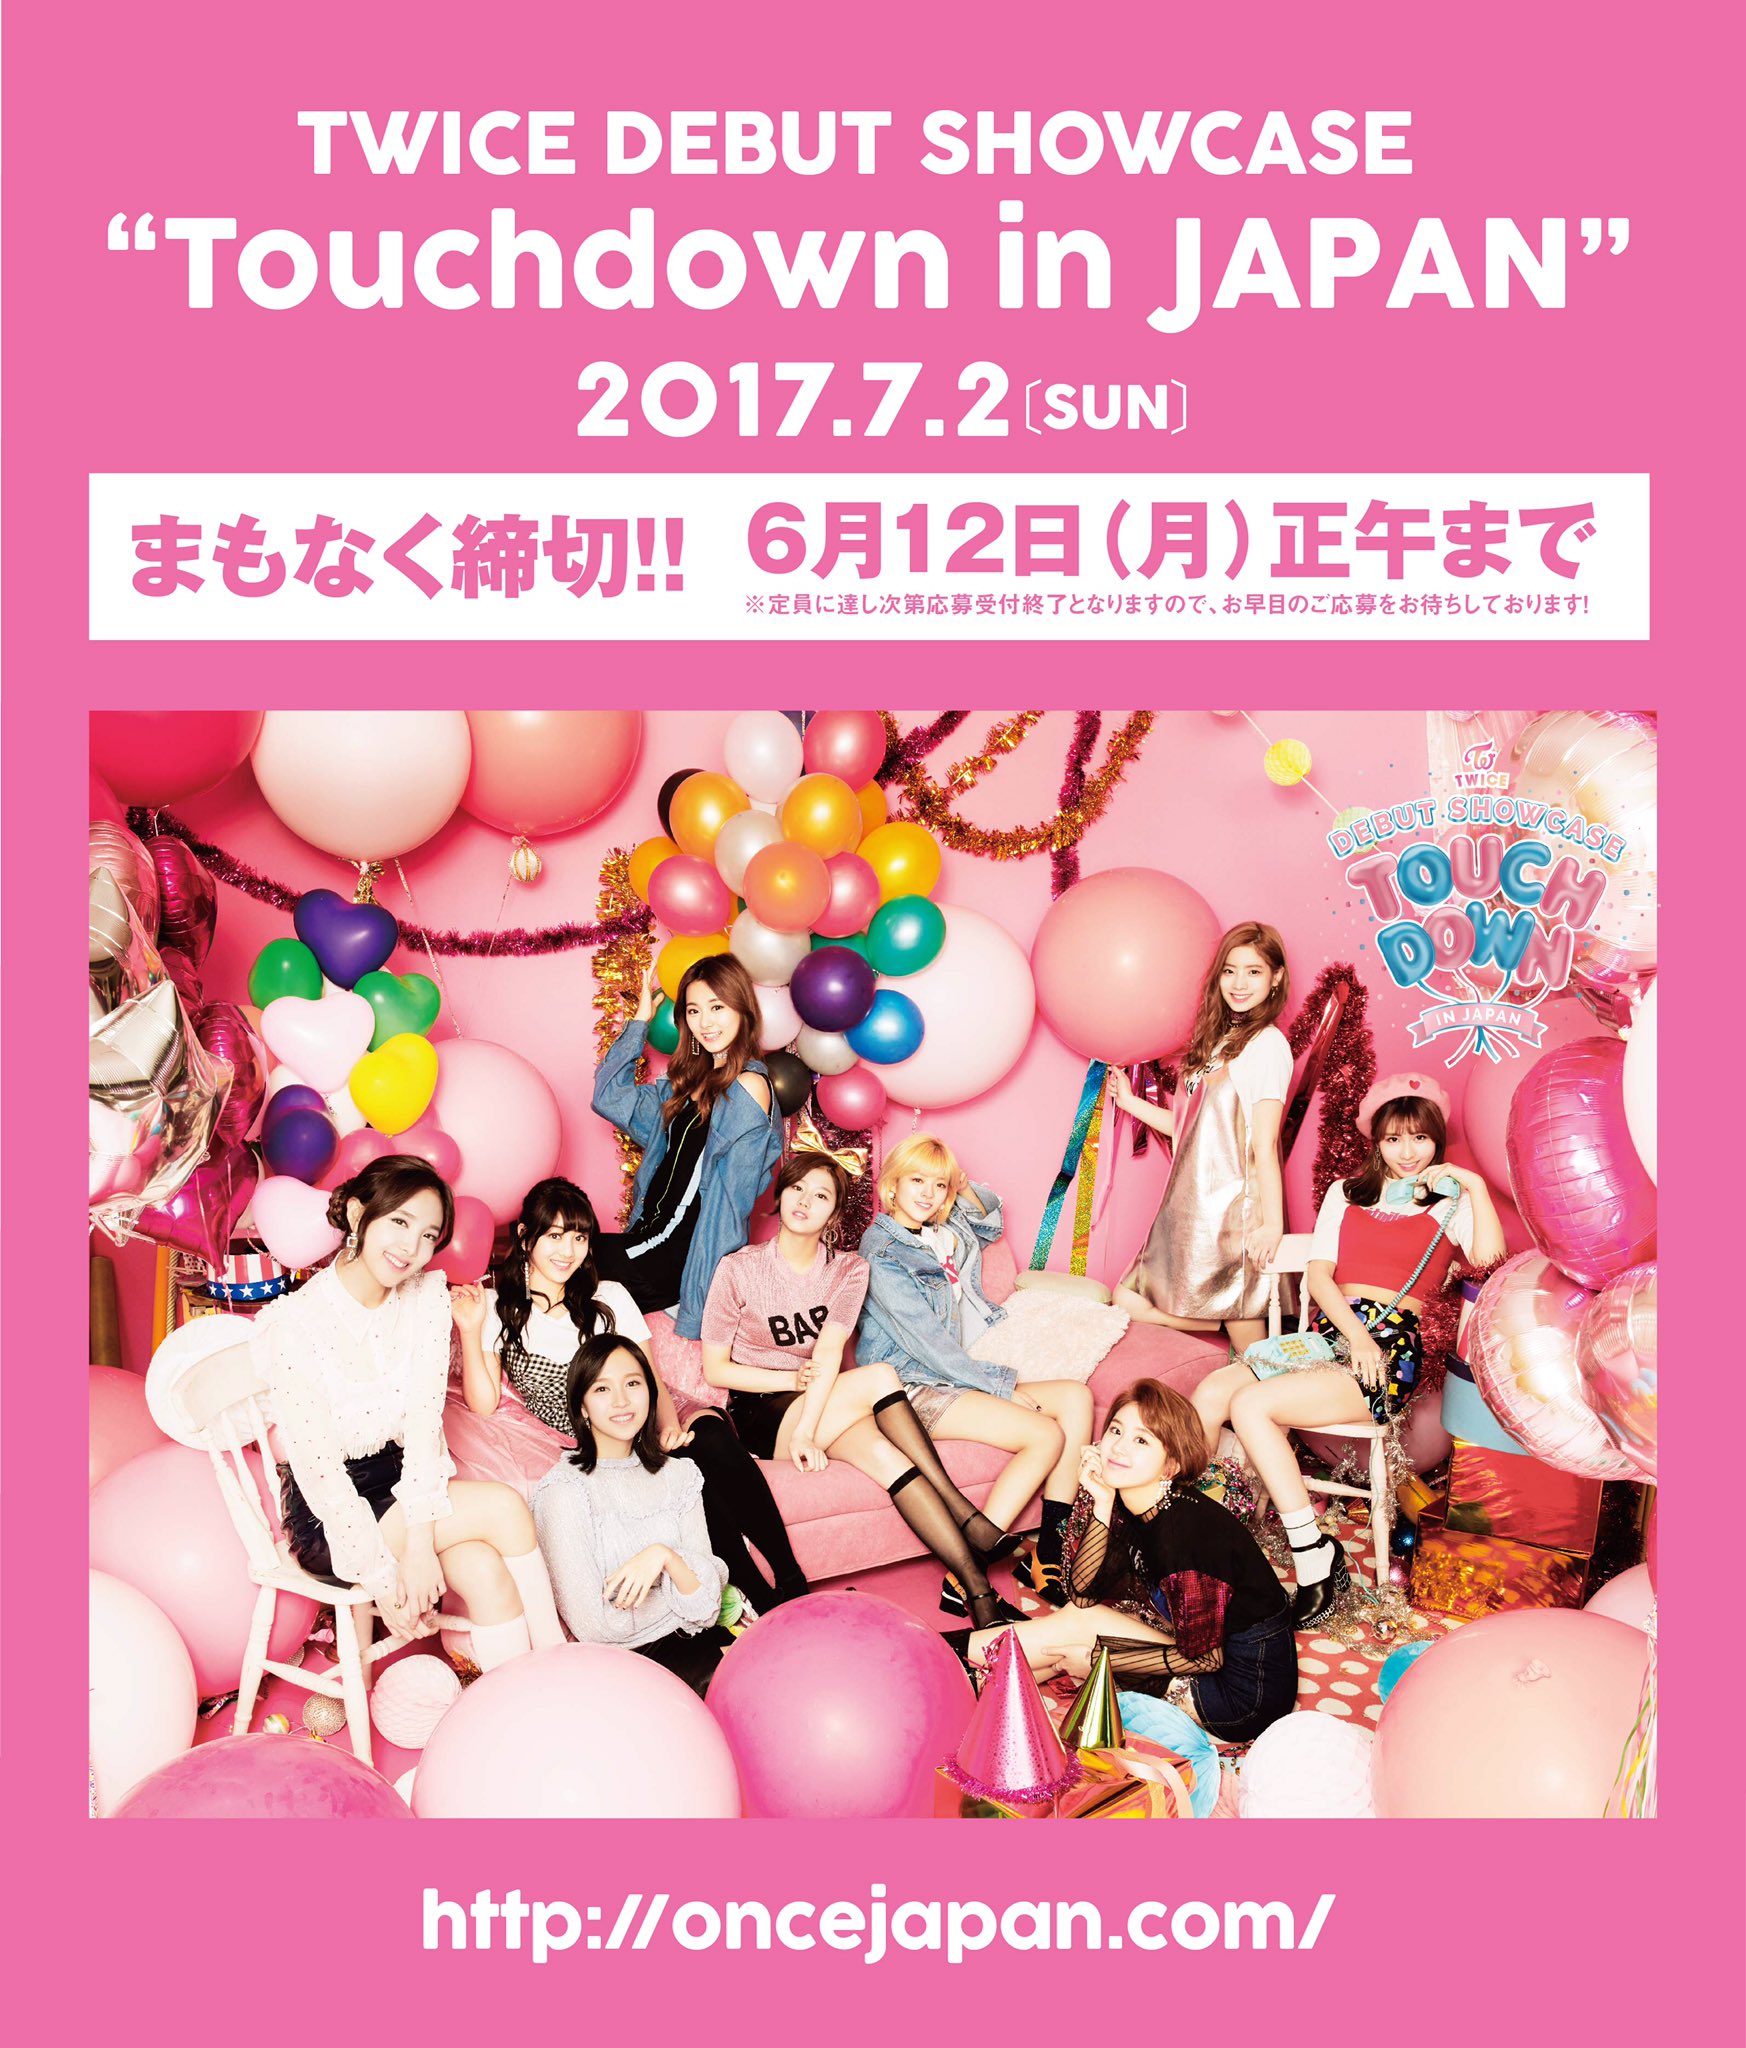 Twice Debut Showcase Touchdown in Japan | Twice Wiki | Fandom